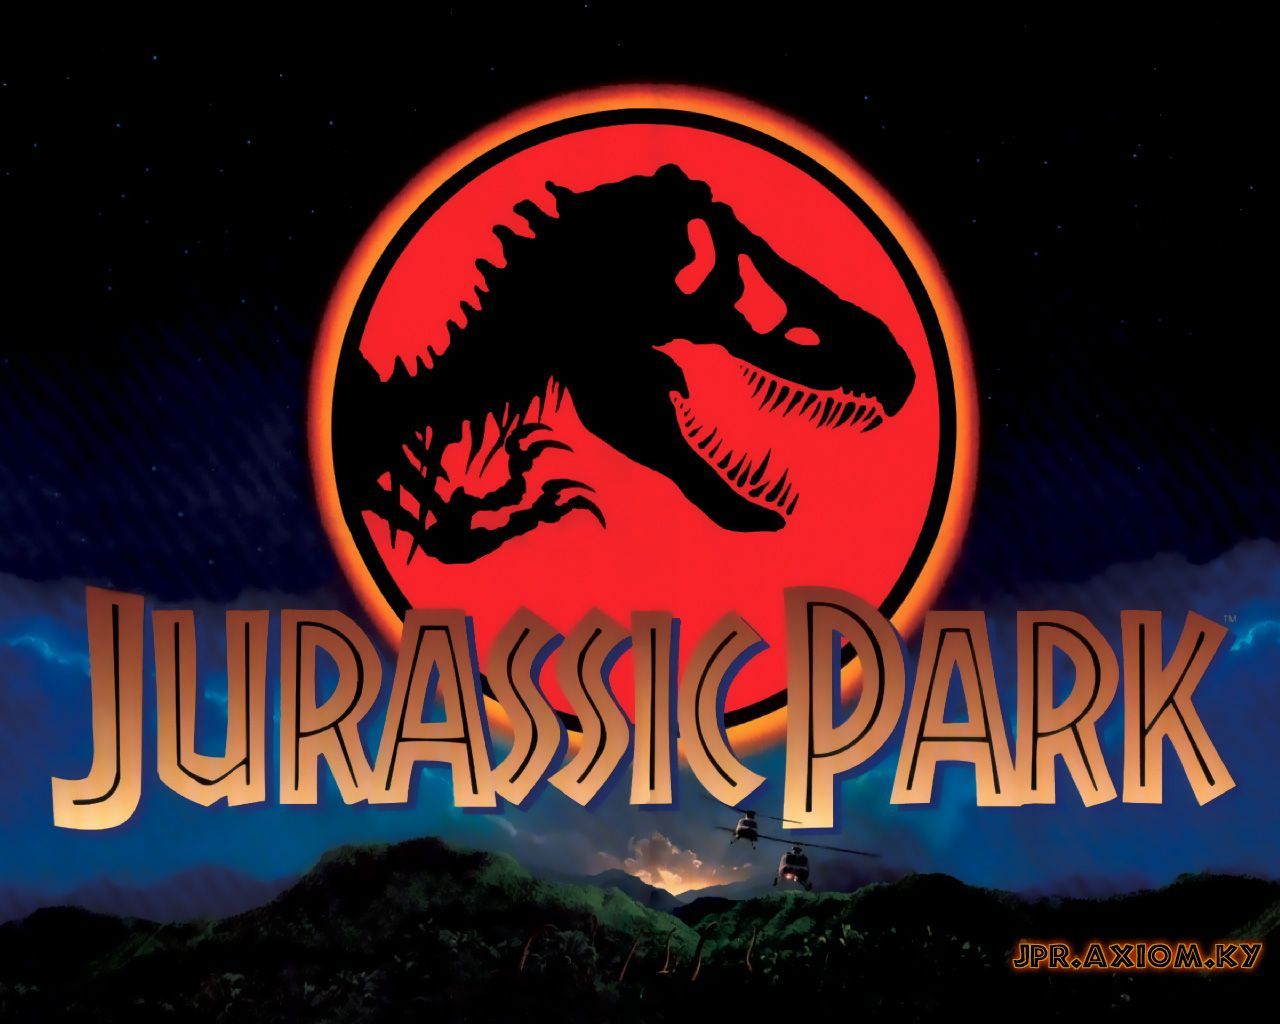 Jurassic Park Logo Wallpaper. Jurassic park logo, Jurassic park, Jurassic park world